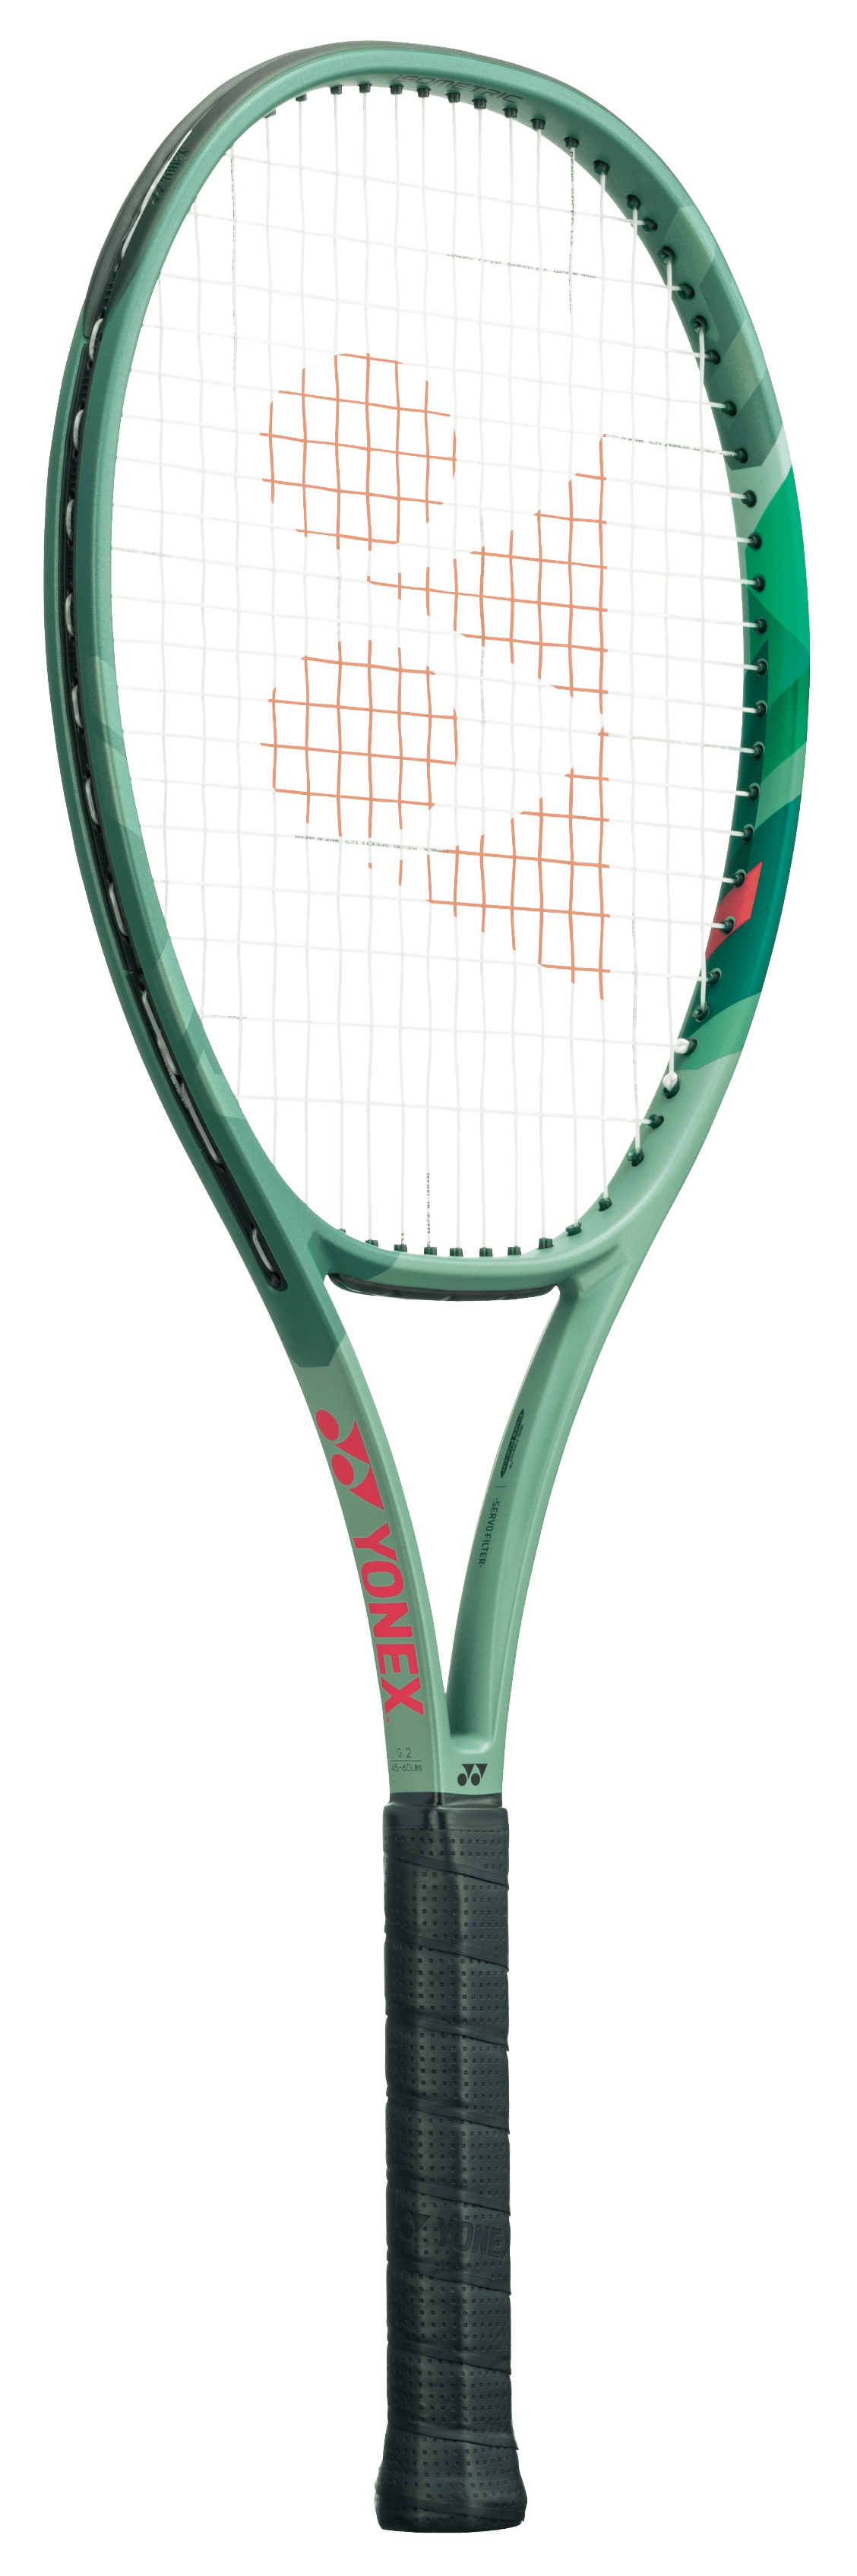 Équipement et matériel de tennis